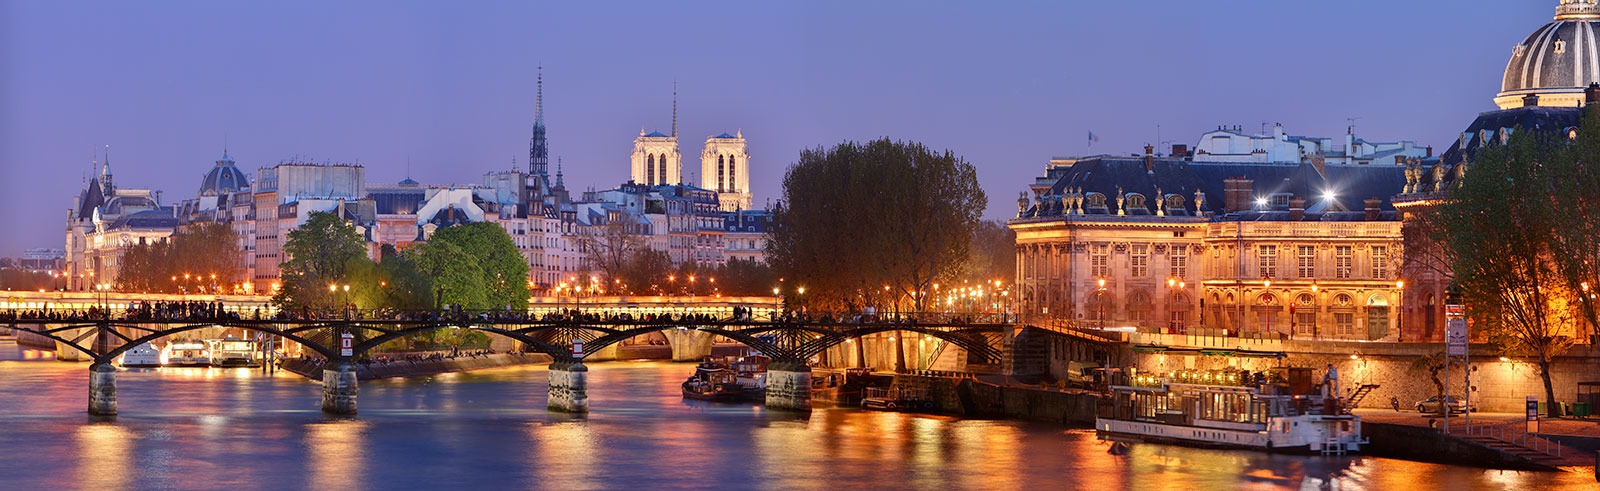 Pont_des_Arts_Paris